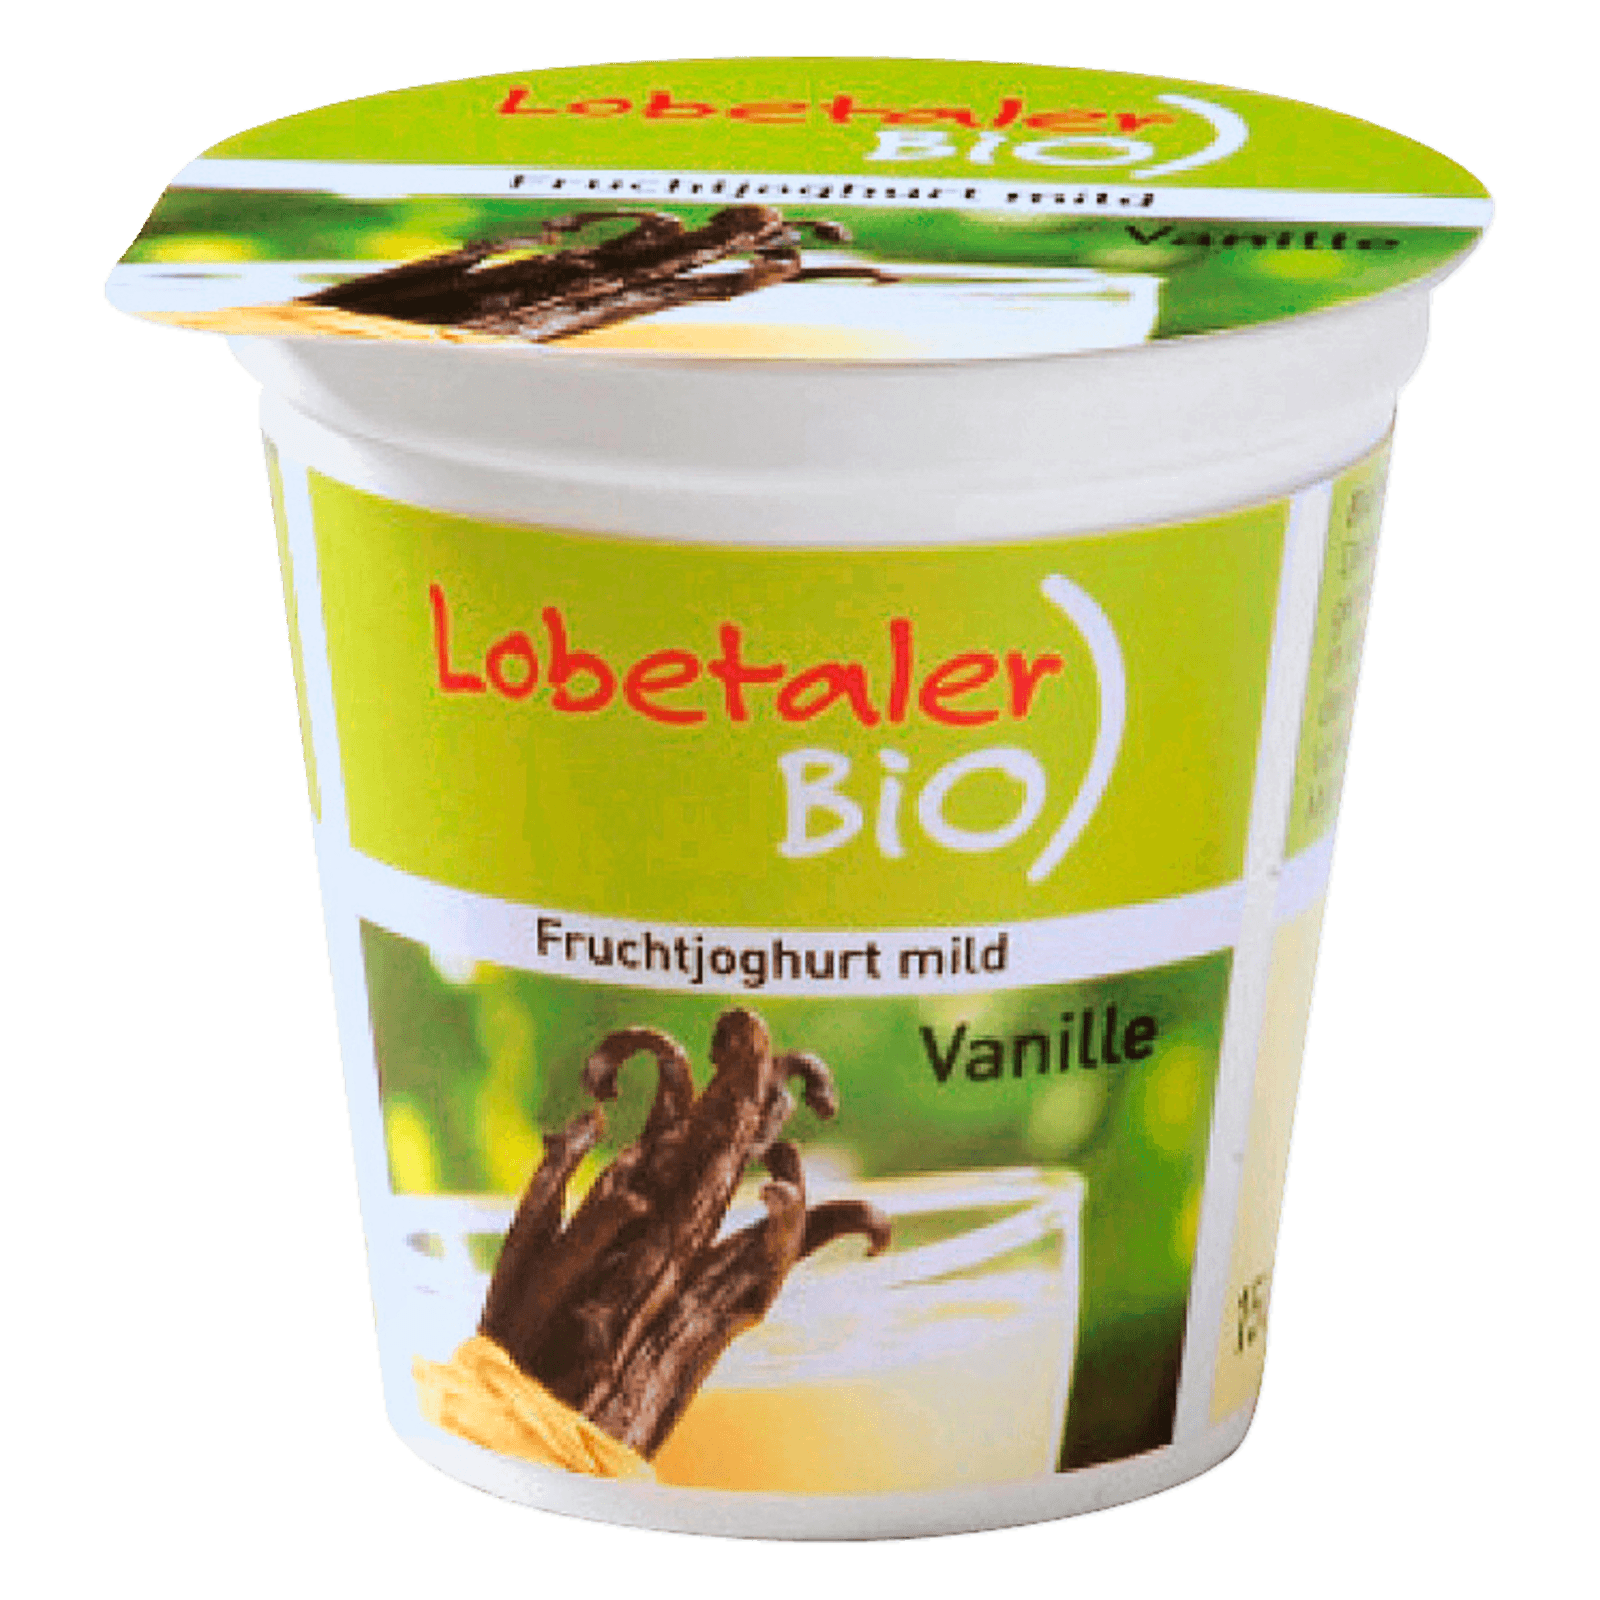 Lobetaler Bio-Joghurt Vanille 150g  für 0.69 EUR